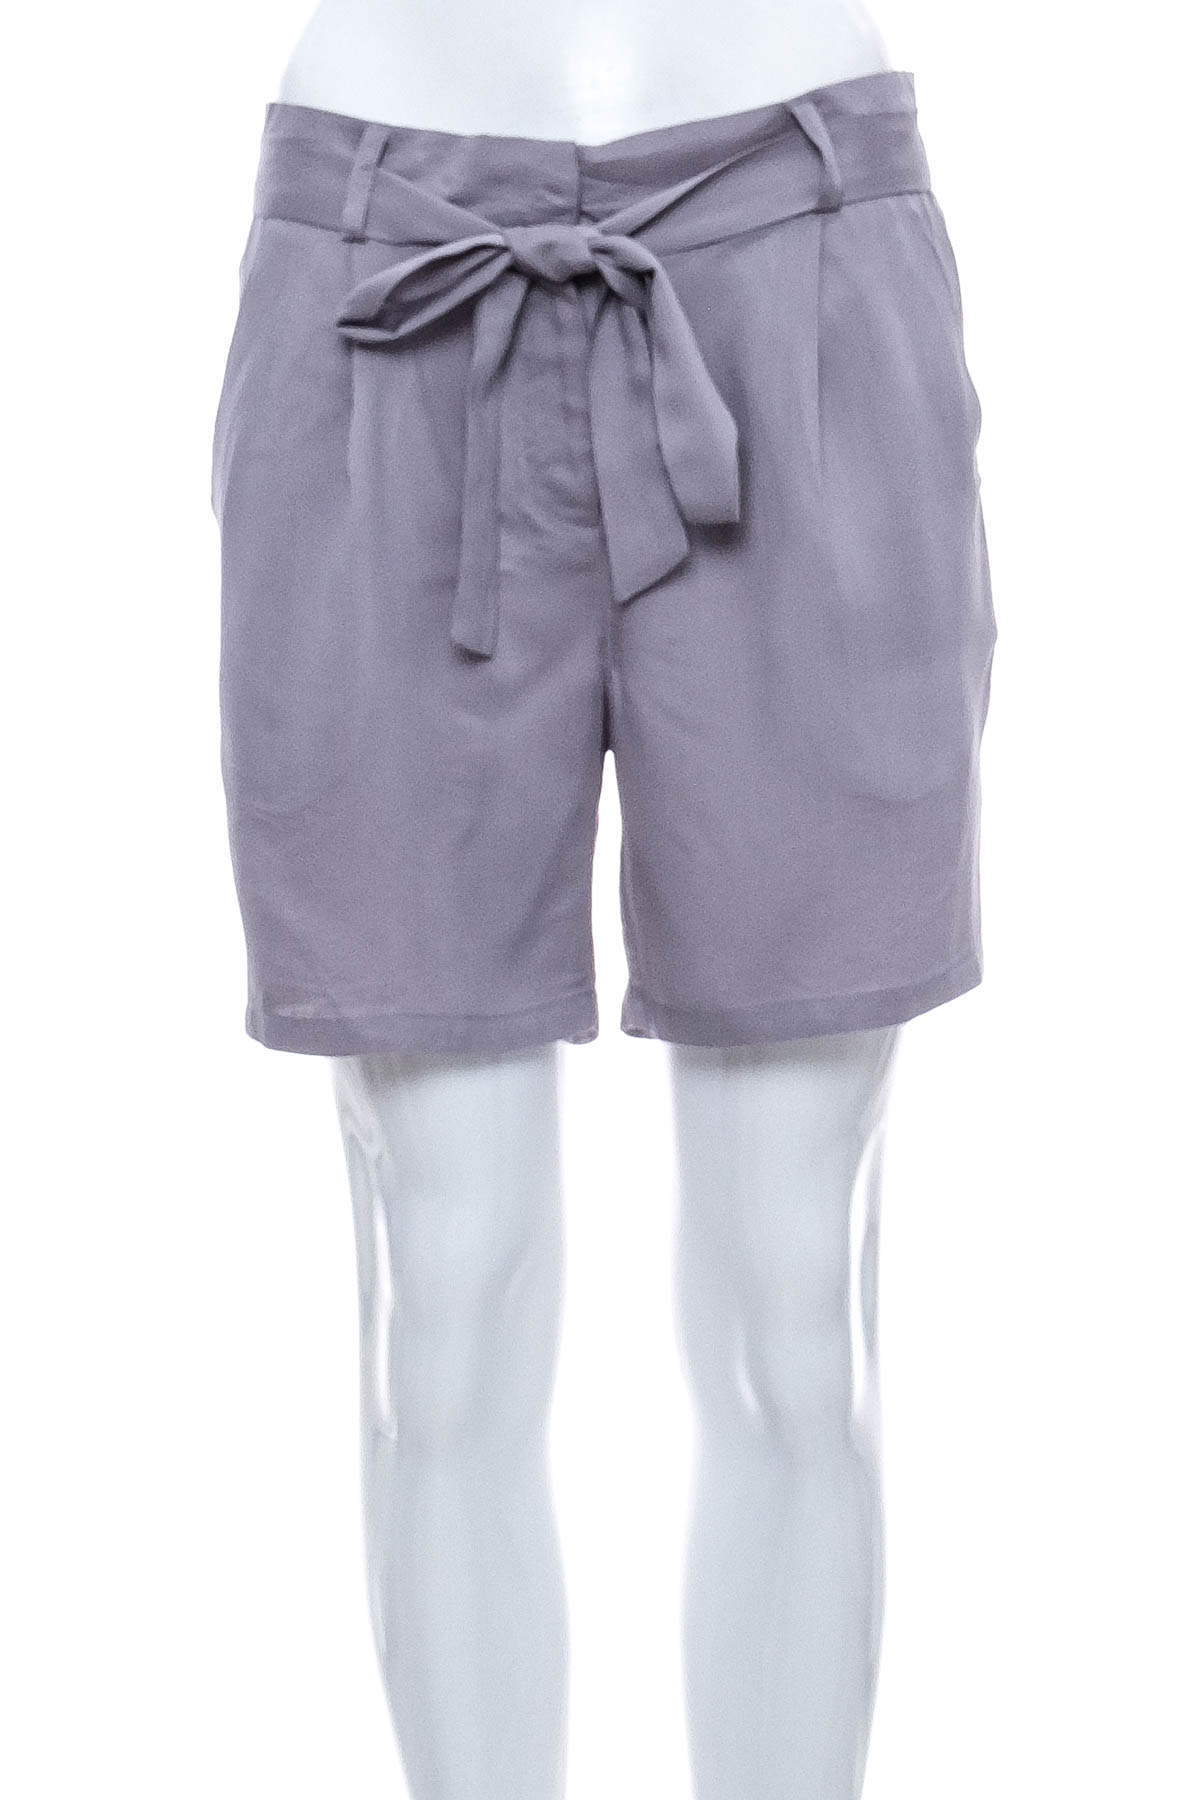 Female shorts - Re.Draft - 0